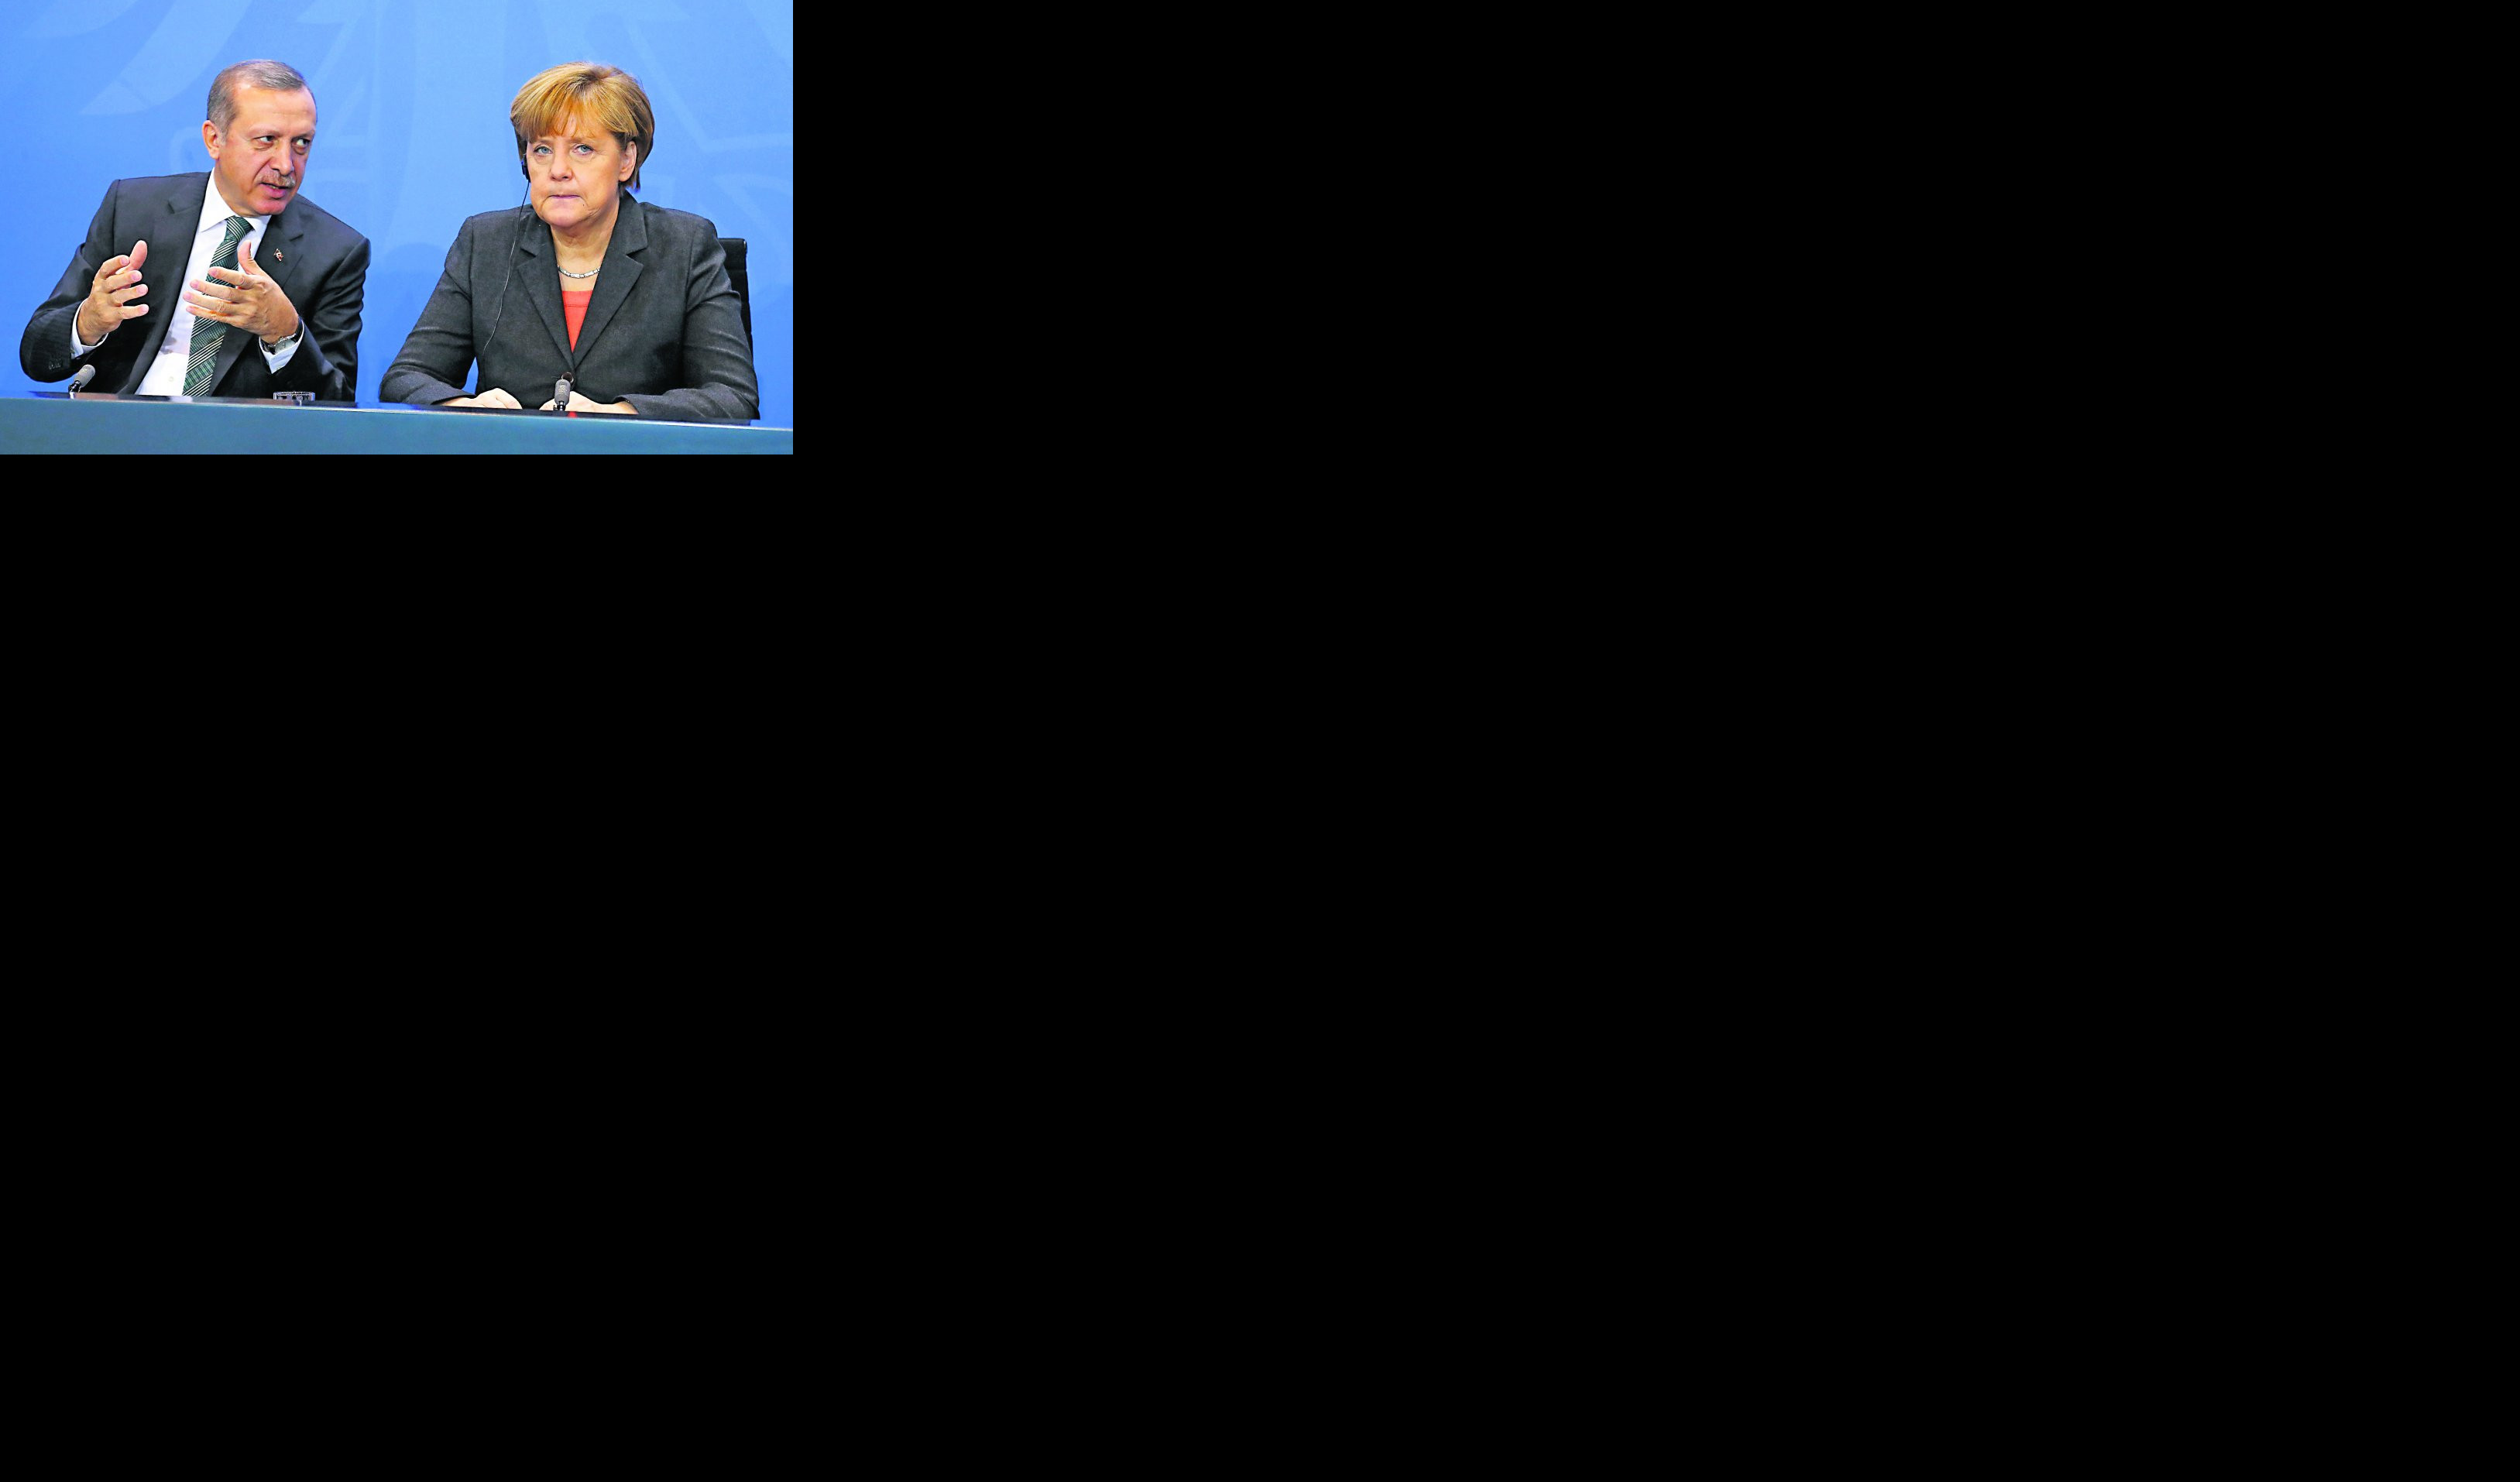 TEŽAK SKANDAL U NEMAČKOJI:  Angela Merkel odbila večeru s Erdoganom, BOJKOTUJE PREDSEDNIKA TURSKE!